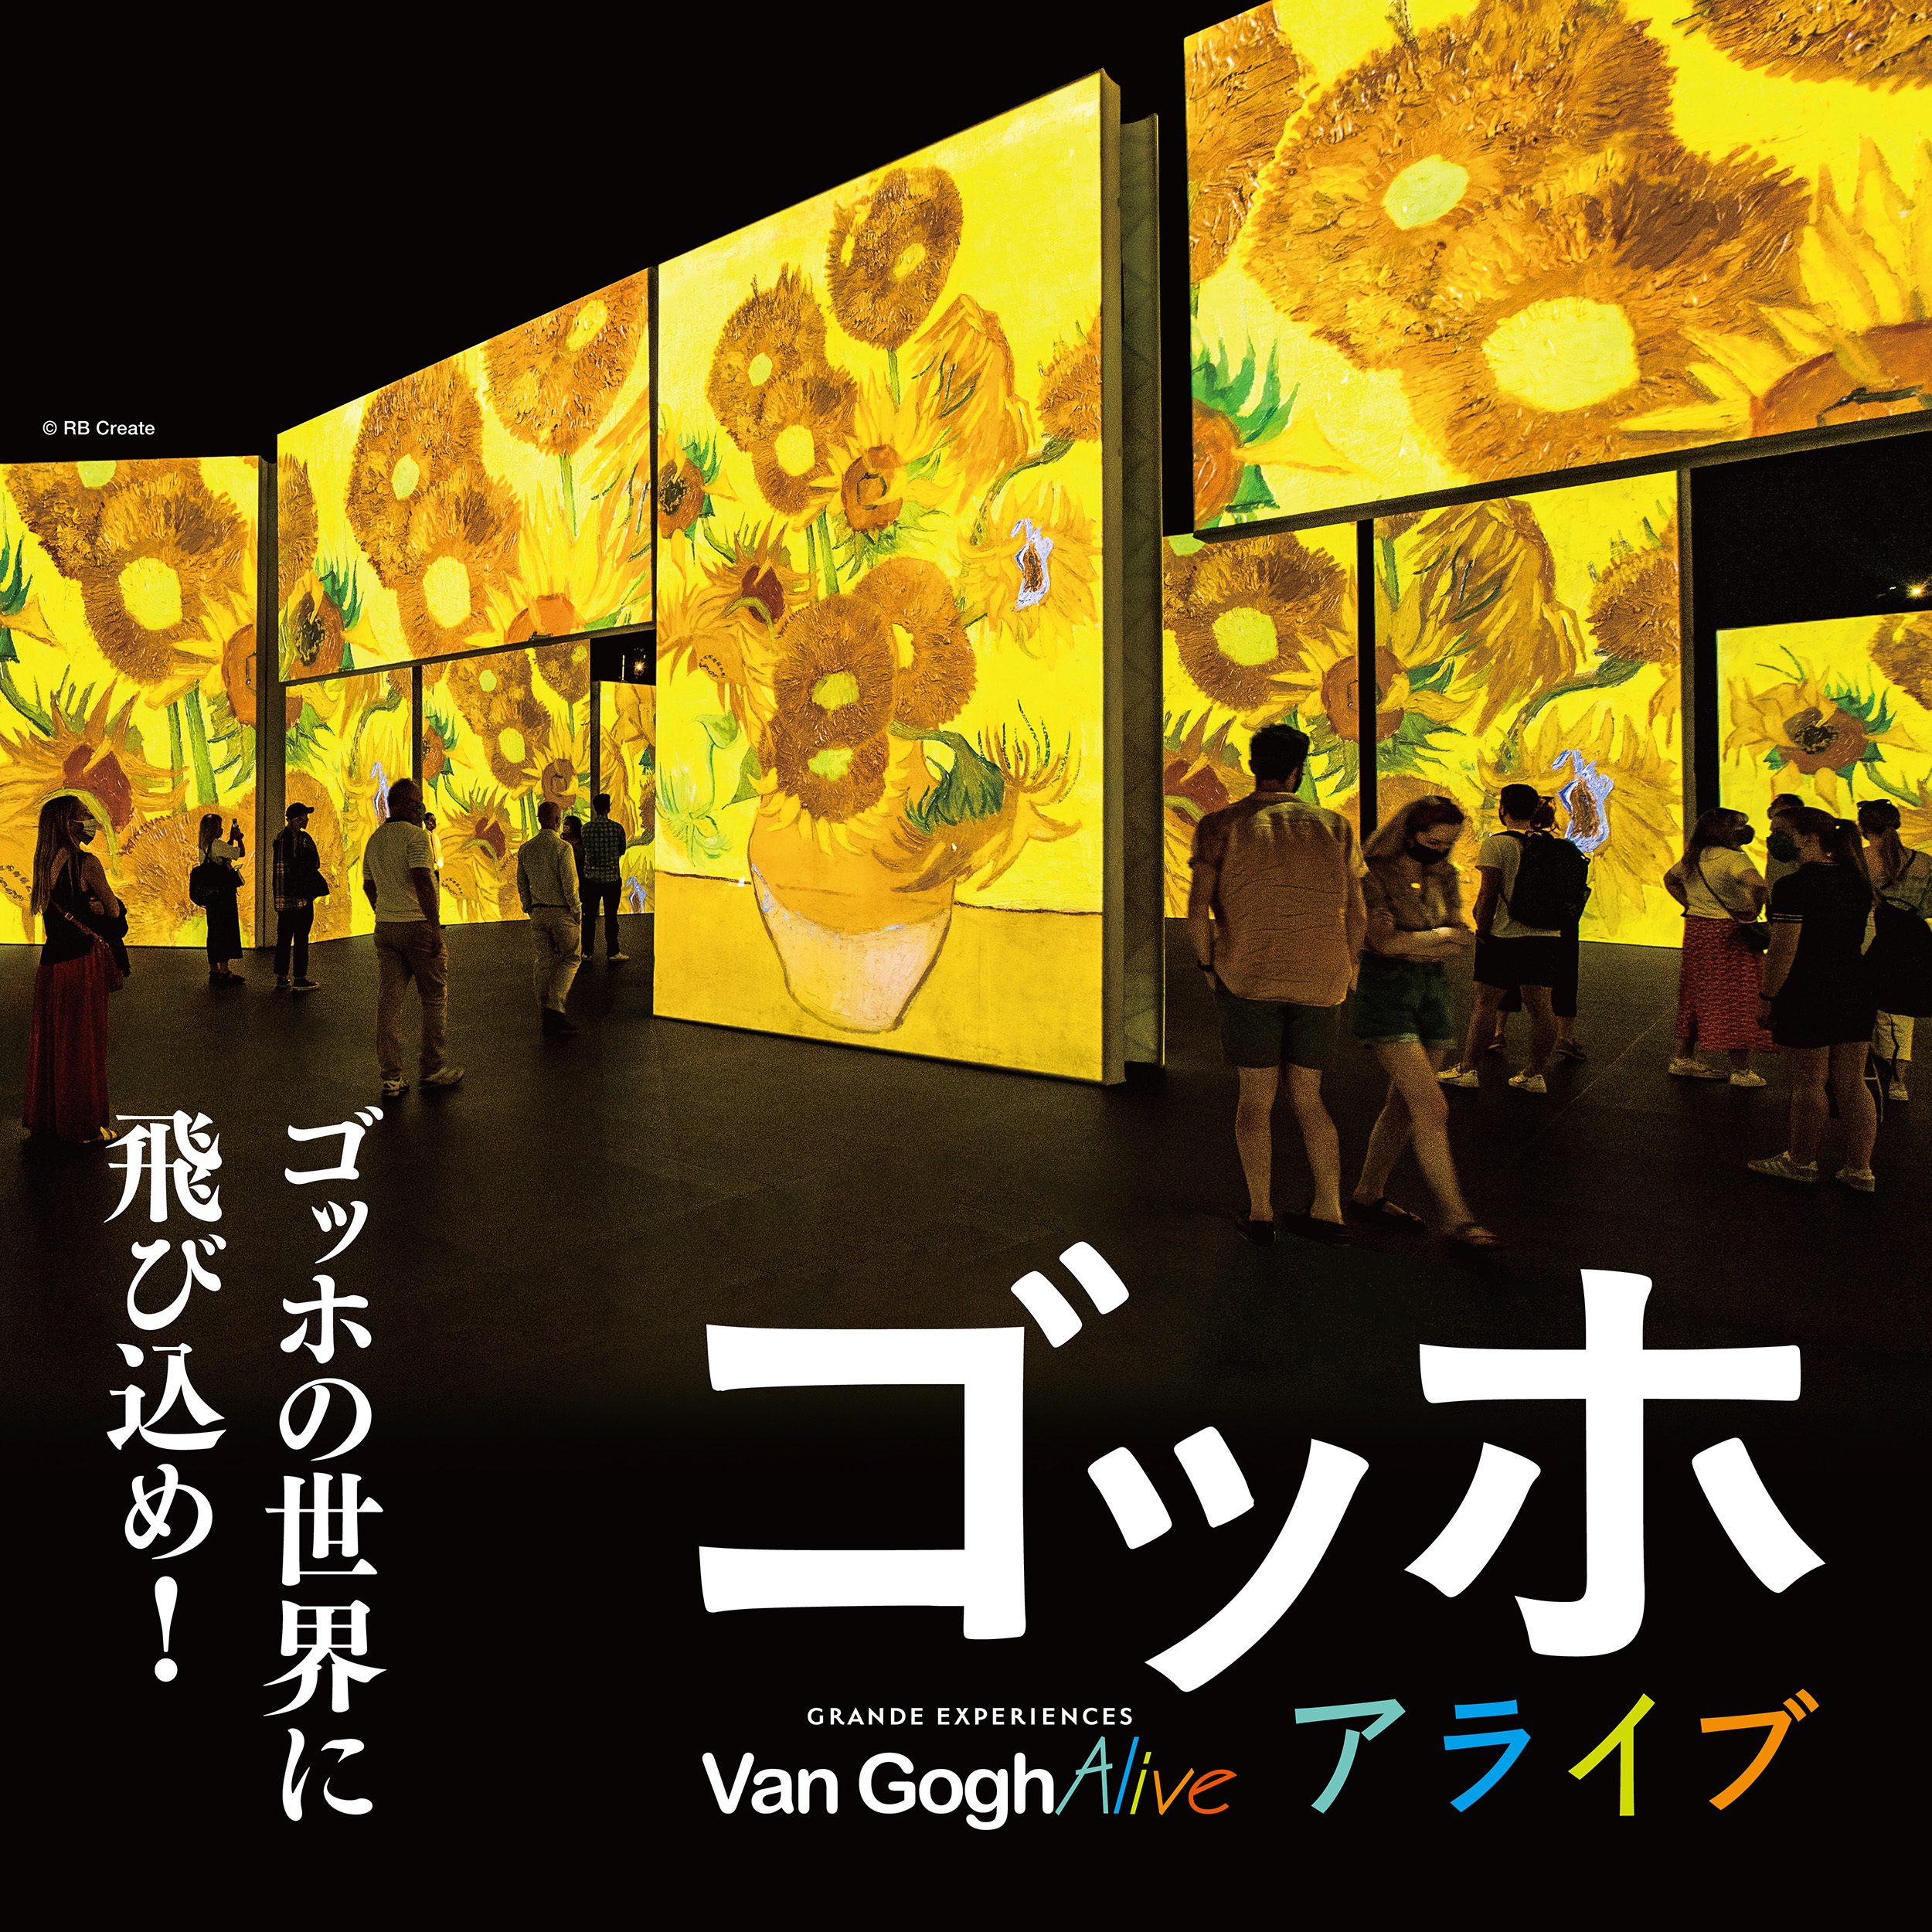 Van Gogh Alive Terada Warehouse G1 Building Admission Ticket (Tokyo)